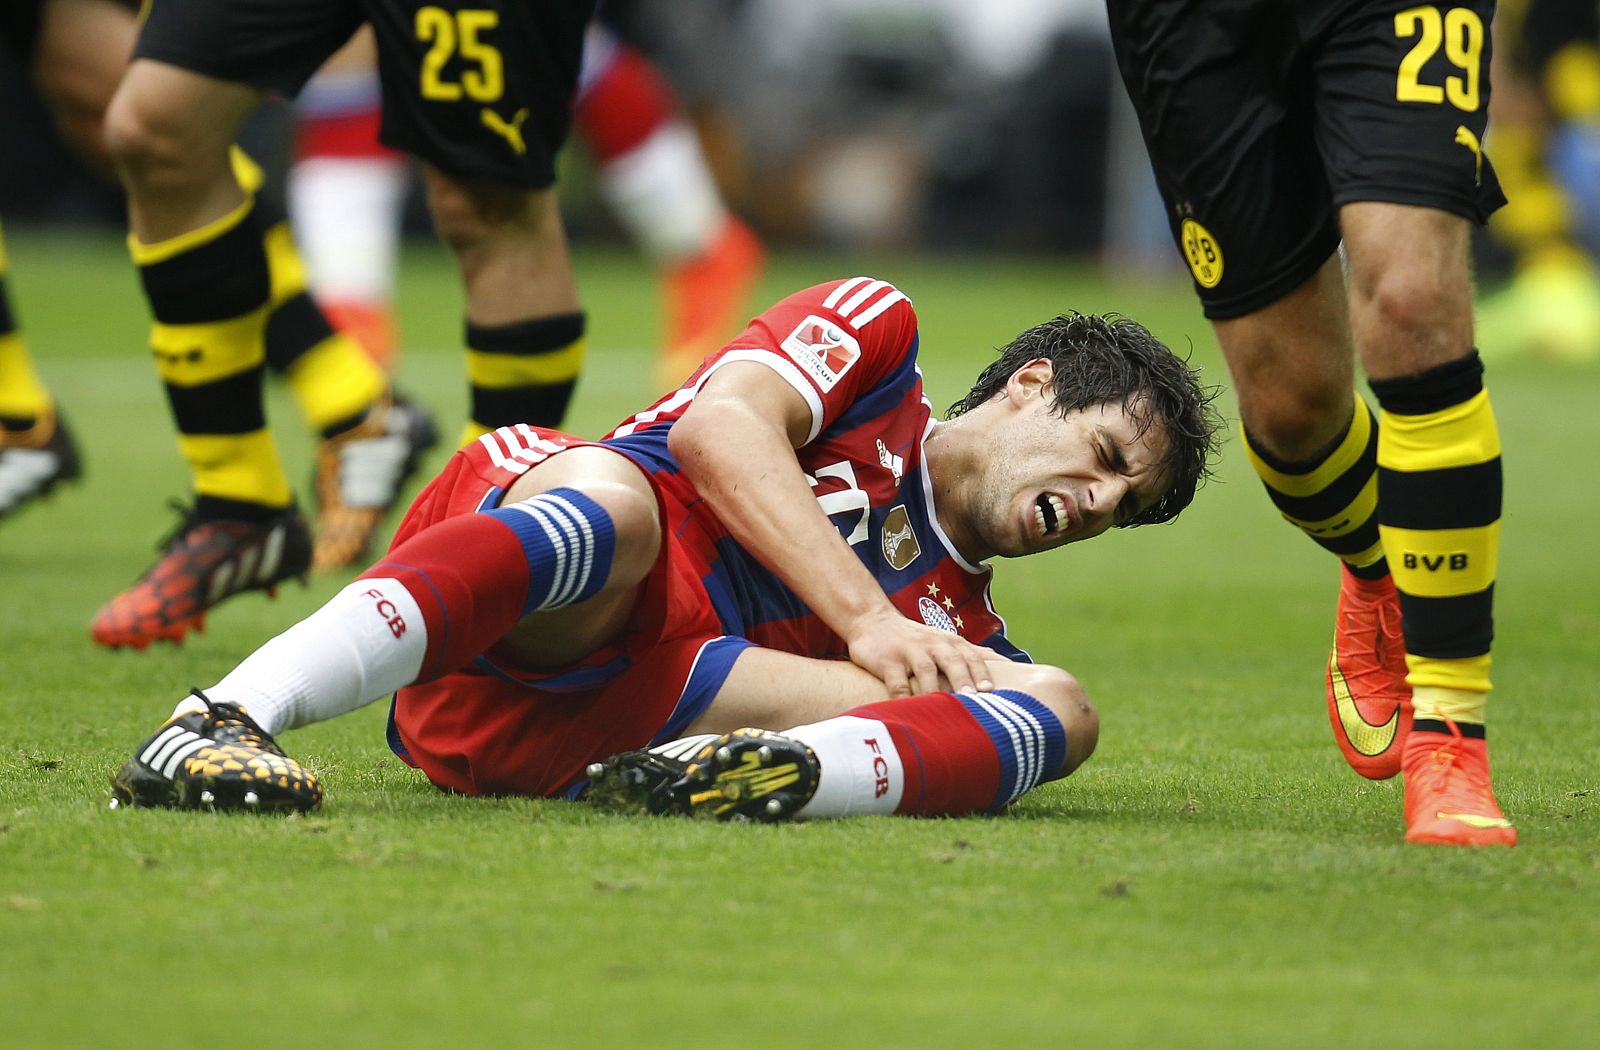 Imagen de Javi Martínez doliéndose de la lesión sufrida en la rodilla durante la Supercopa de Alemania.